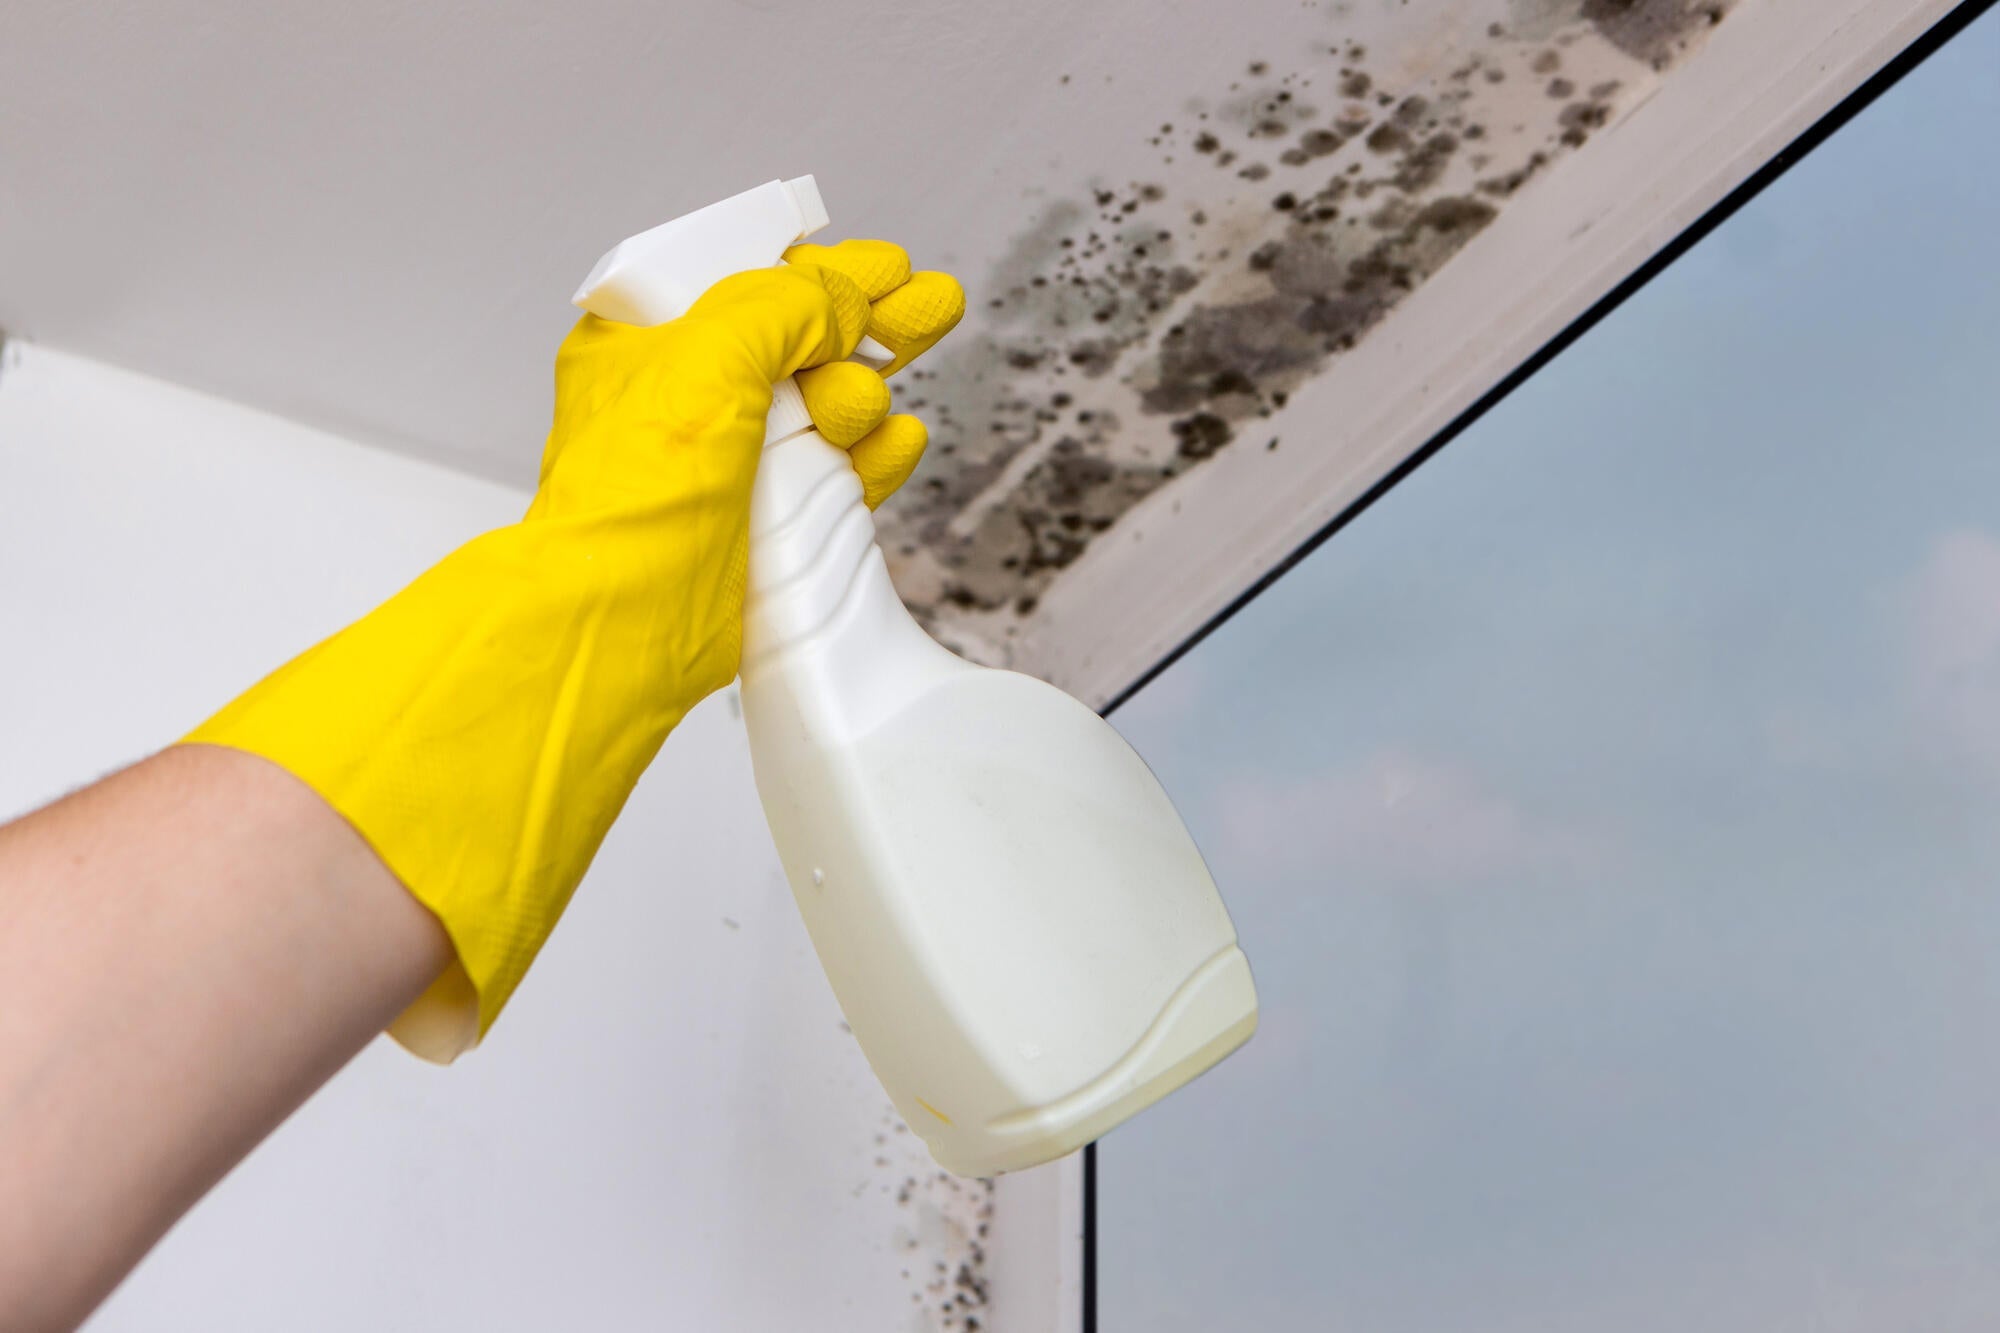 antimuffa spray igienizzante per muro interni casa bagno docce alghe pareti